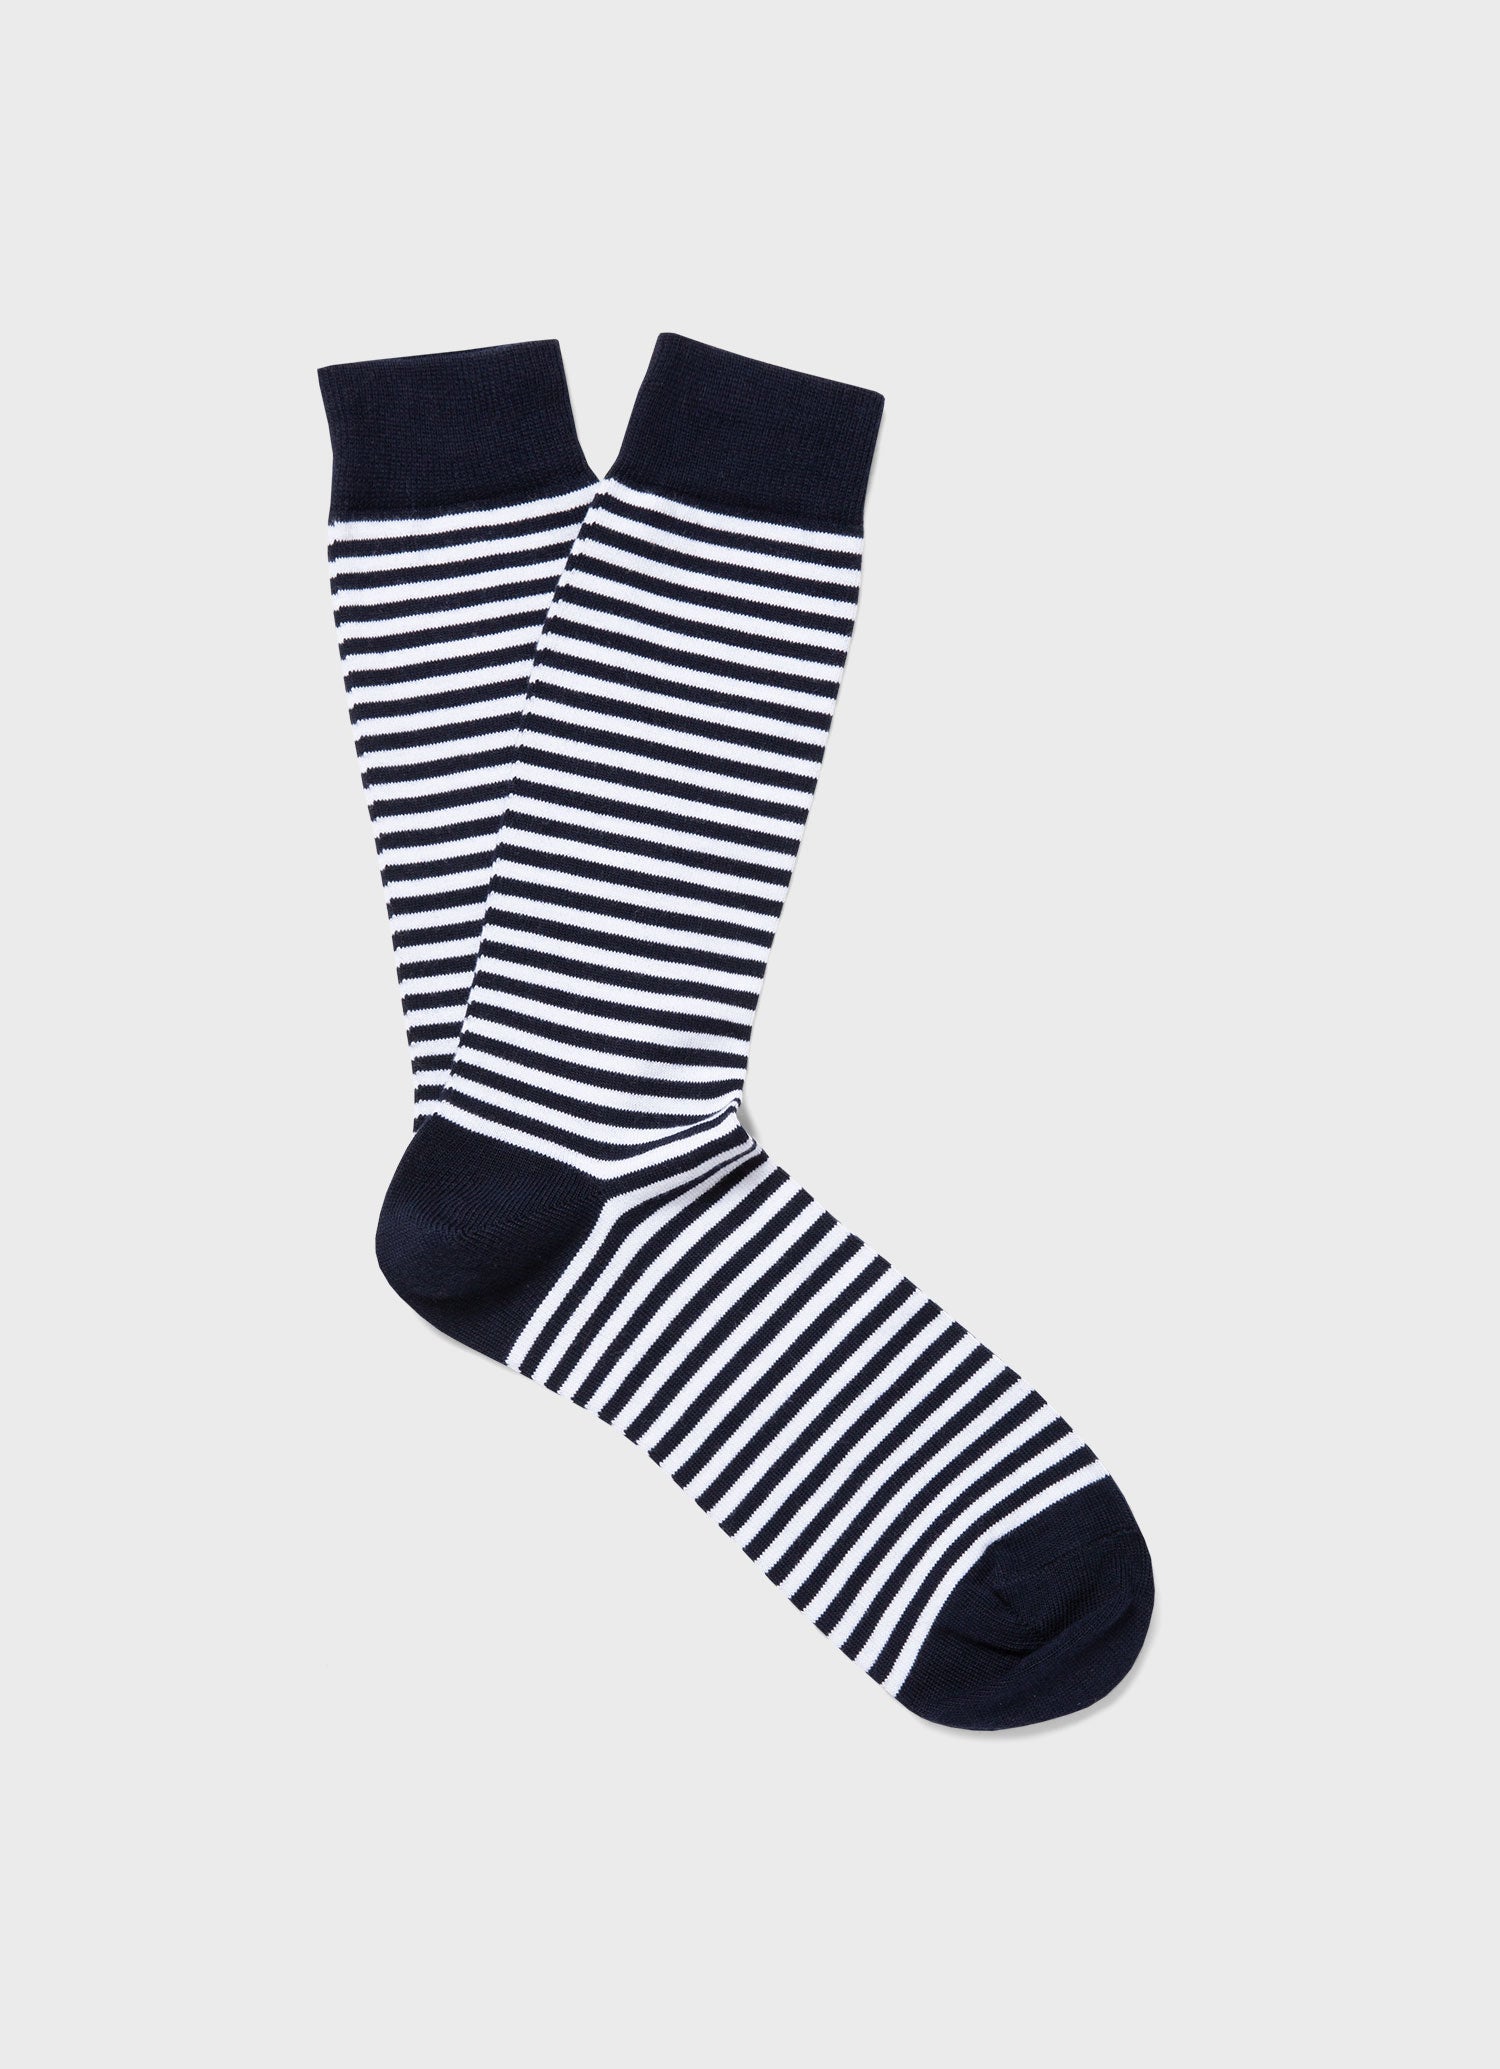 Men's Cotton Socks in White/Navy English Stripe | Sunspel